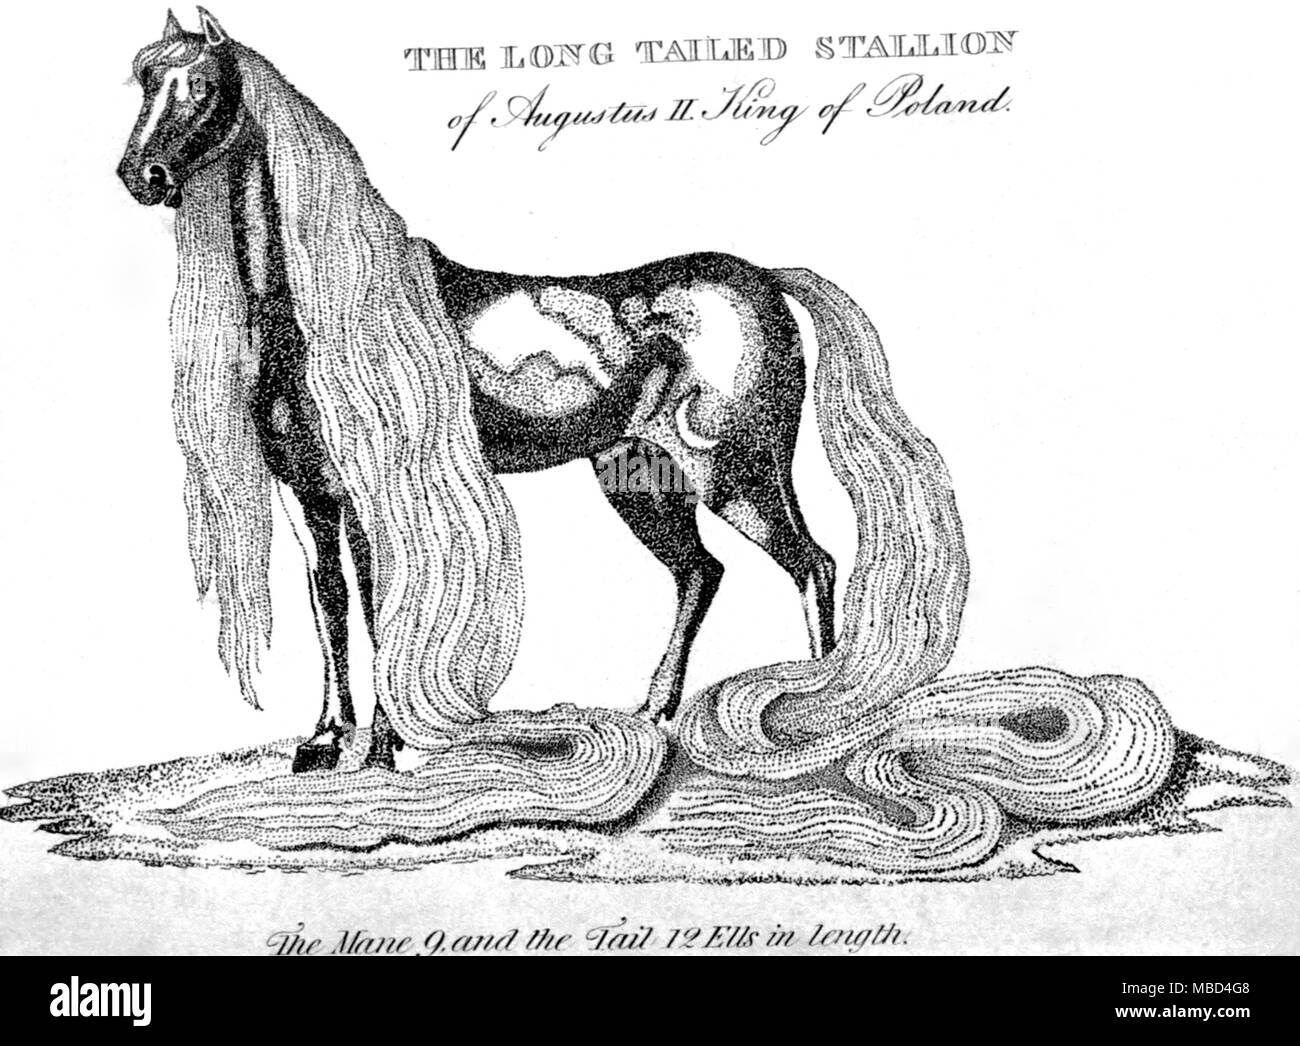 Merkwürdige Phänomene - Gravur des Long-tailed Pferd von August II., König von Polen. Von Kirby wunderbare Museum 1820 Platte. - ©/Charles Walker Stockfoto